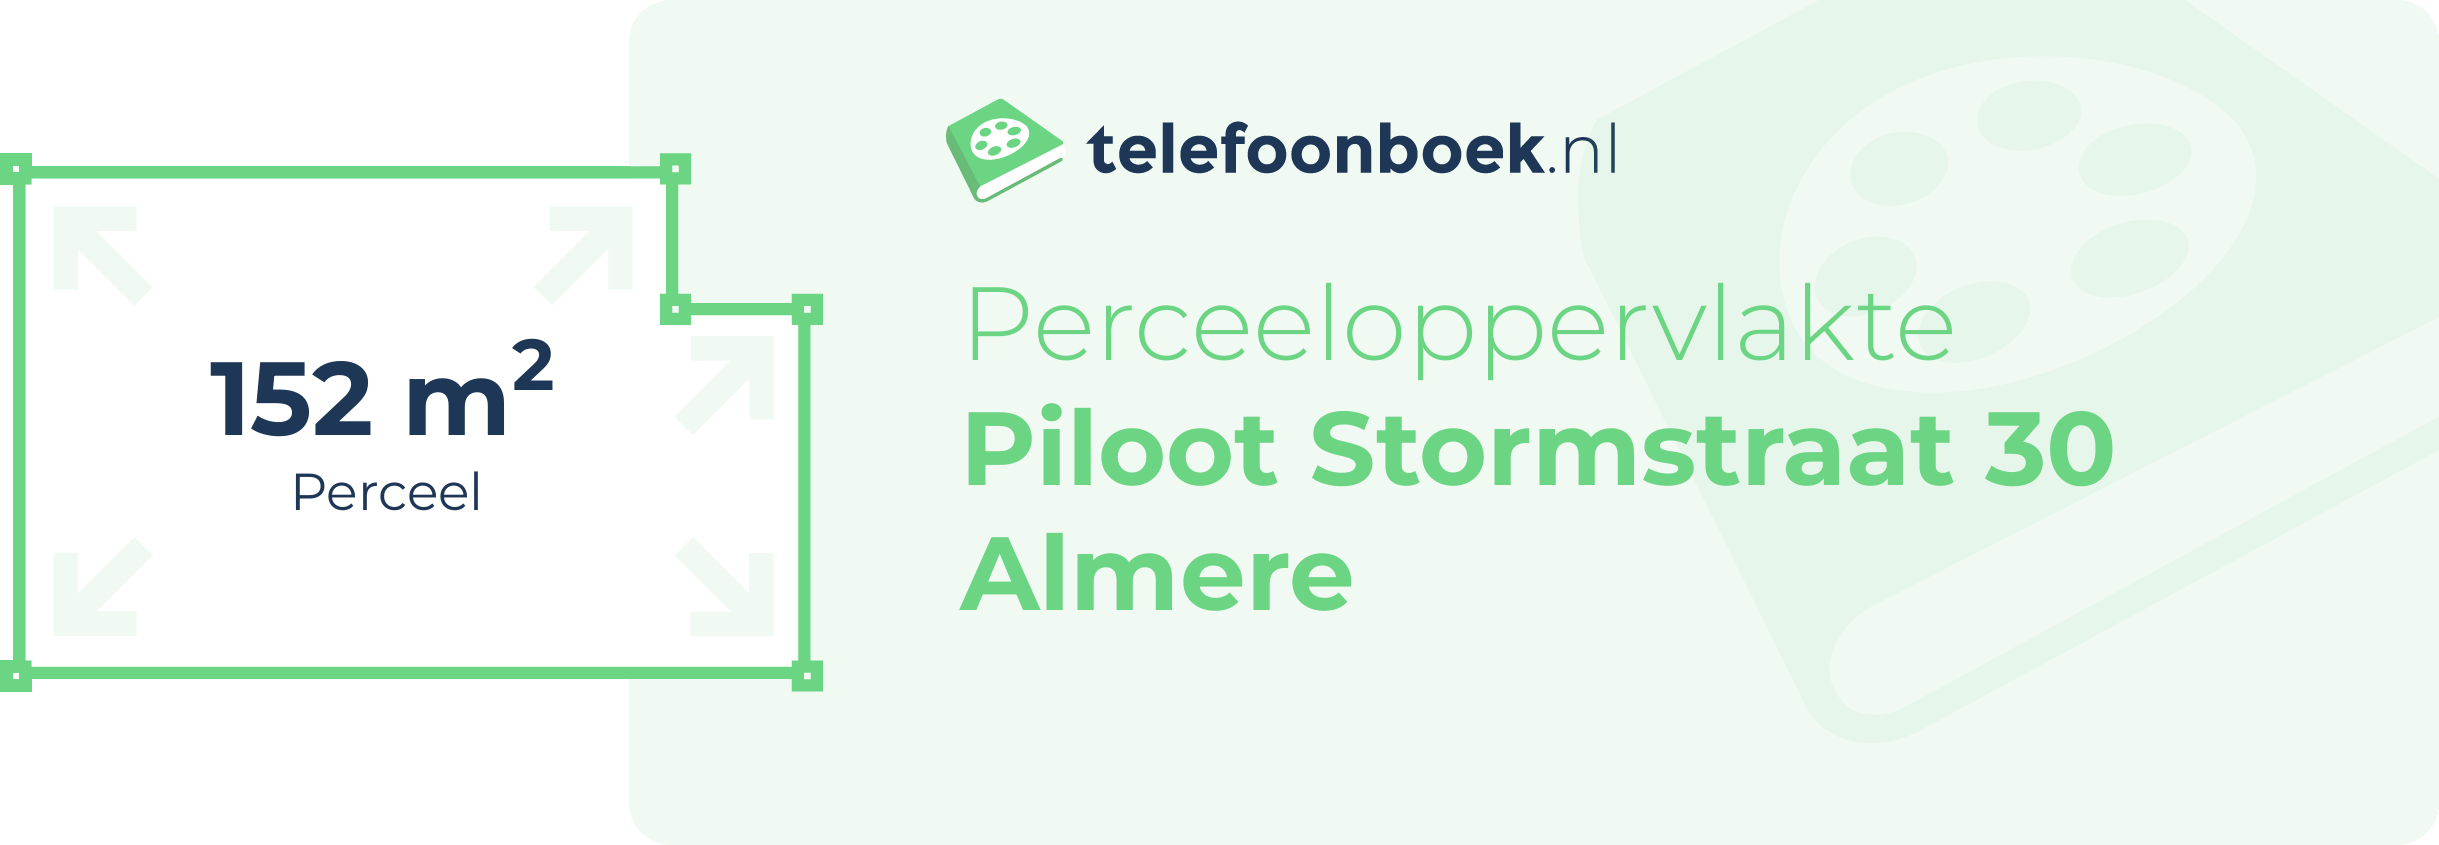 Perceeloppervlakte Piloot Stormstraat 30 Almere